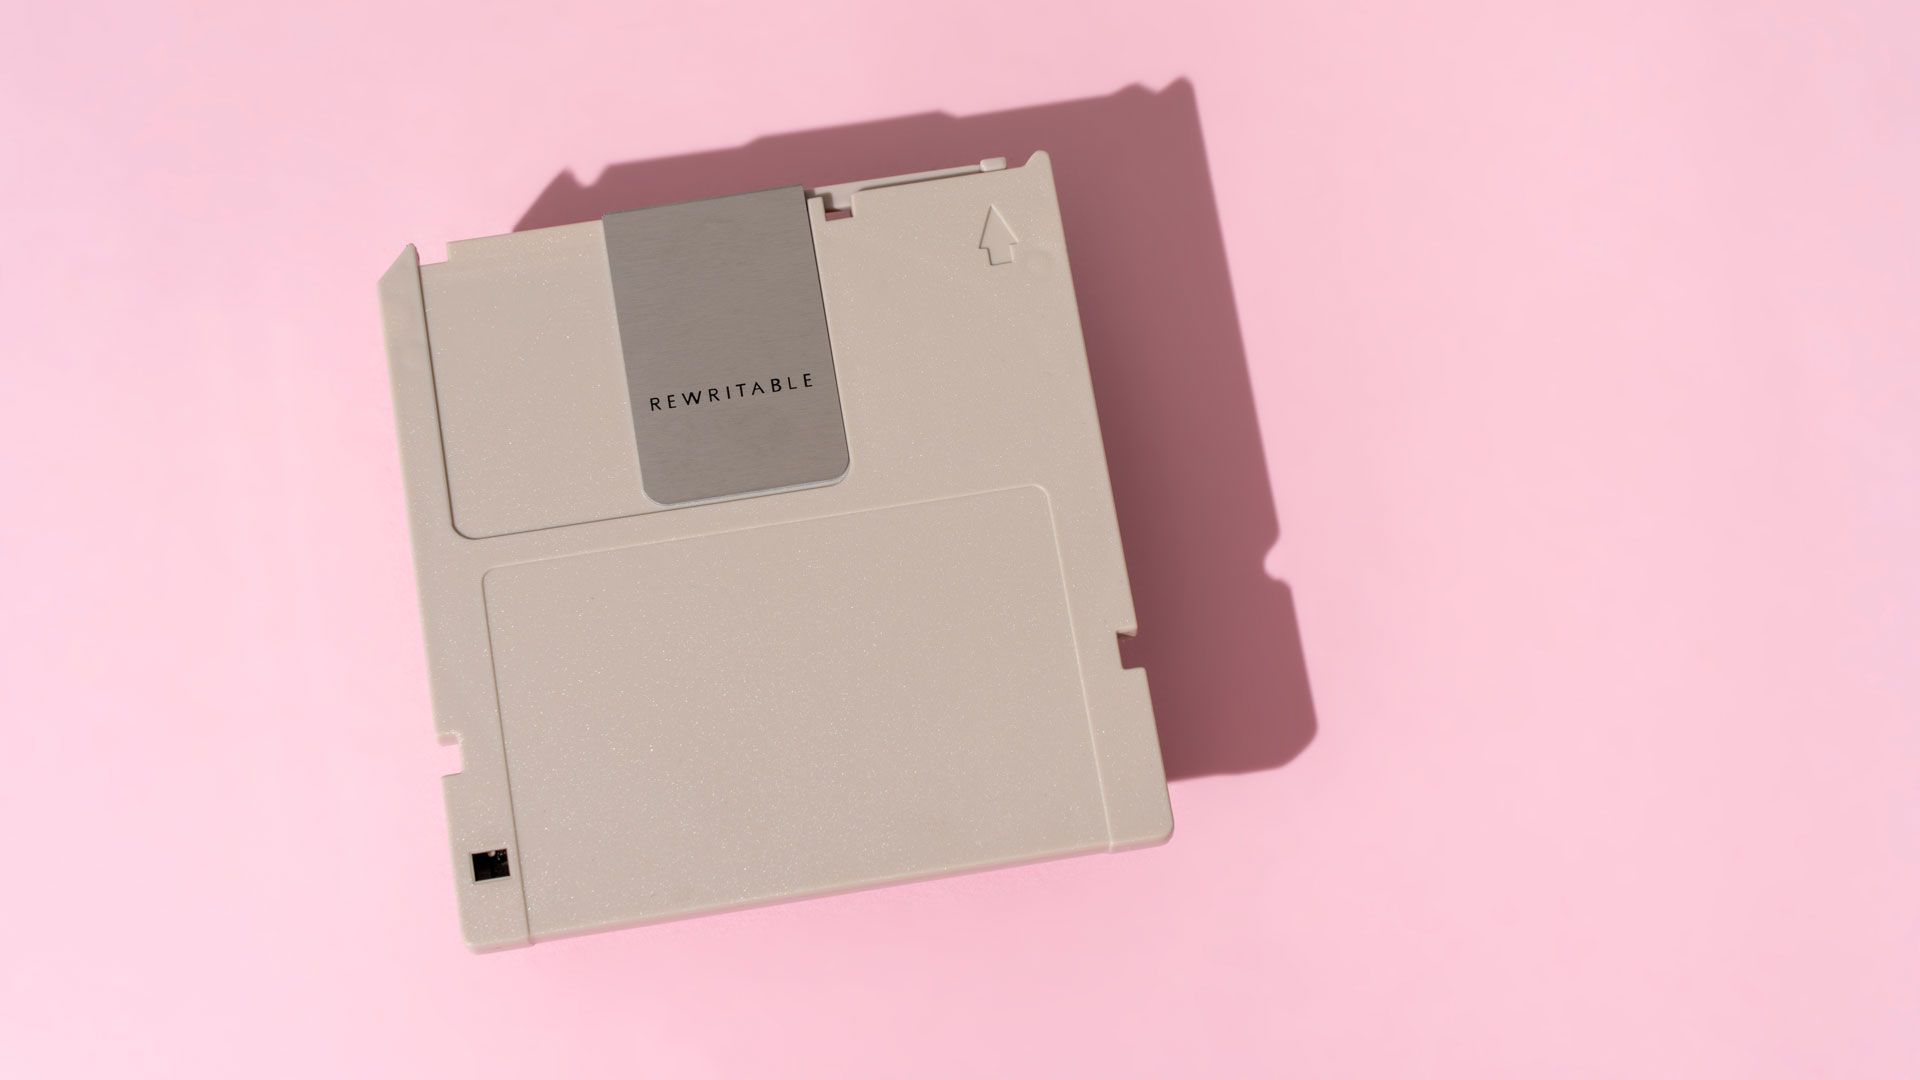 3-5 floppy disk